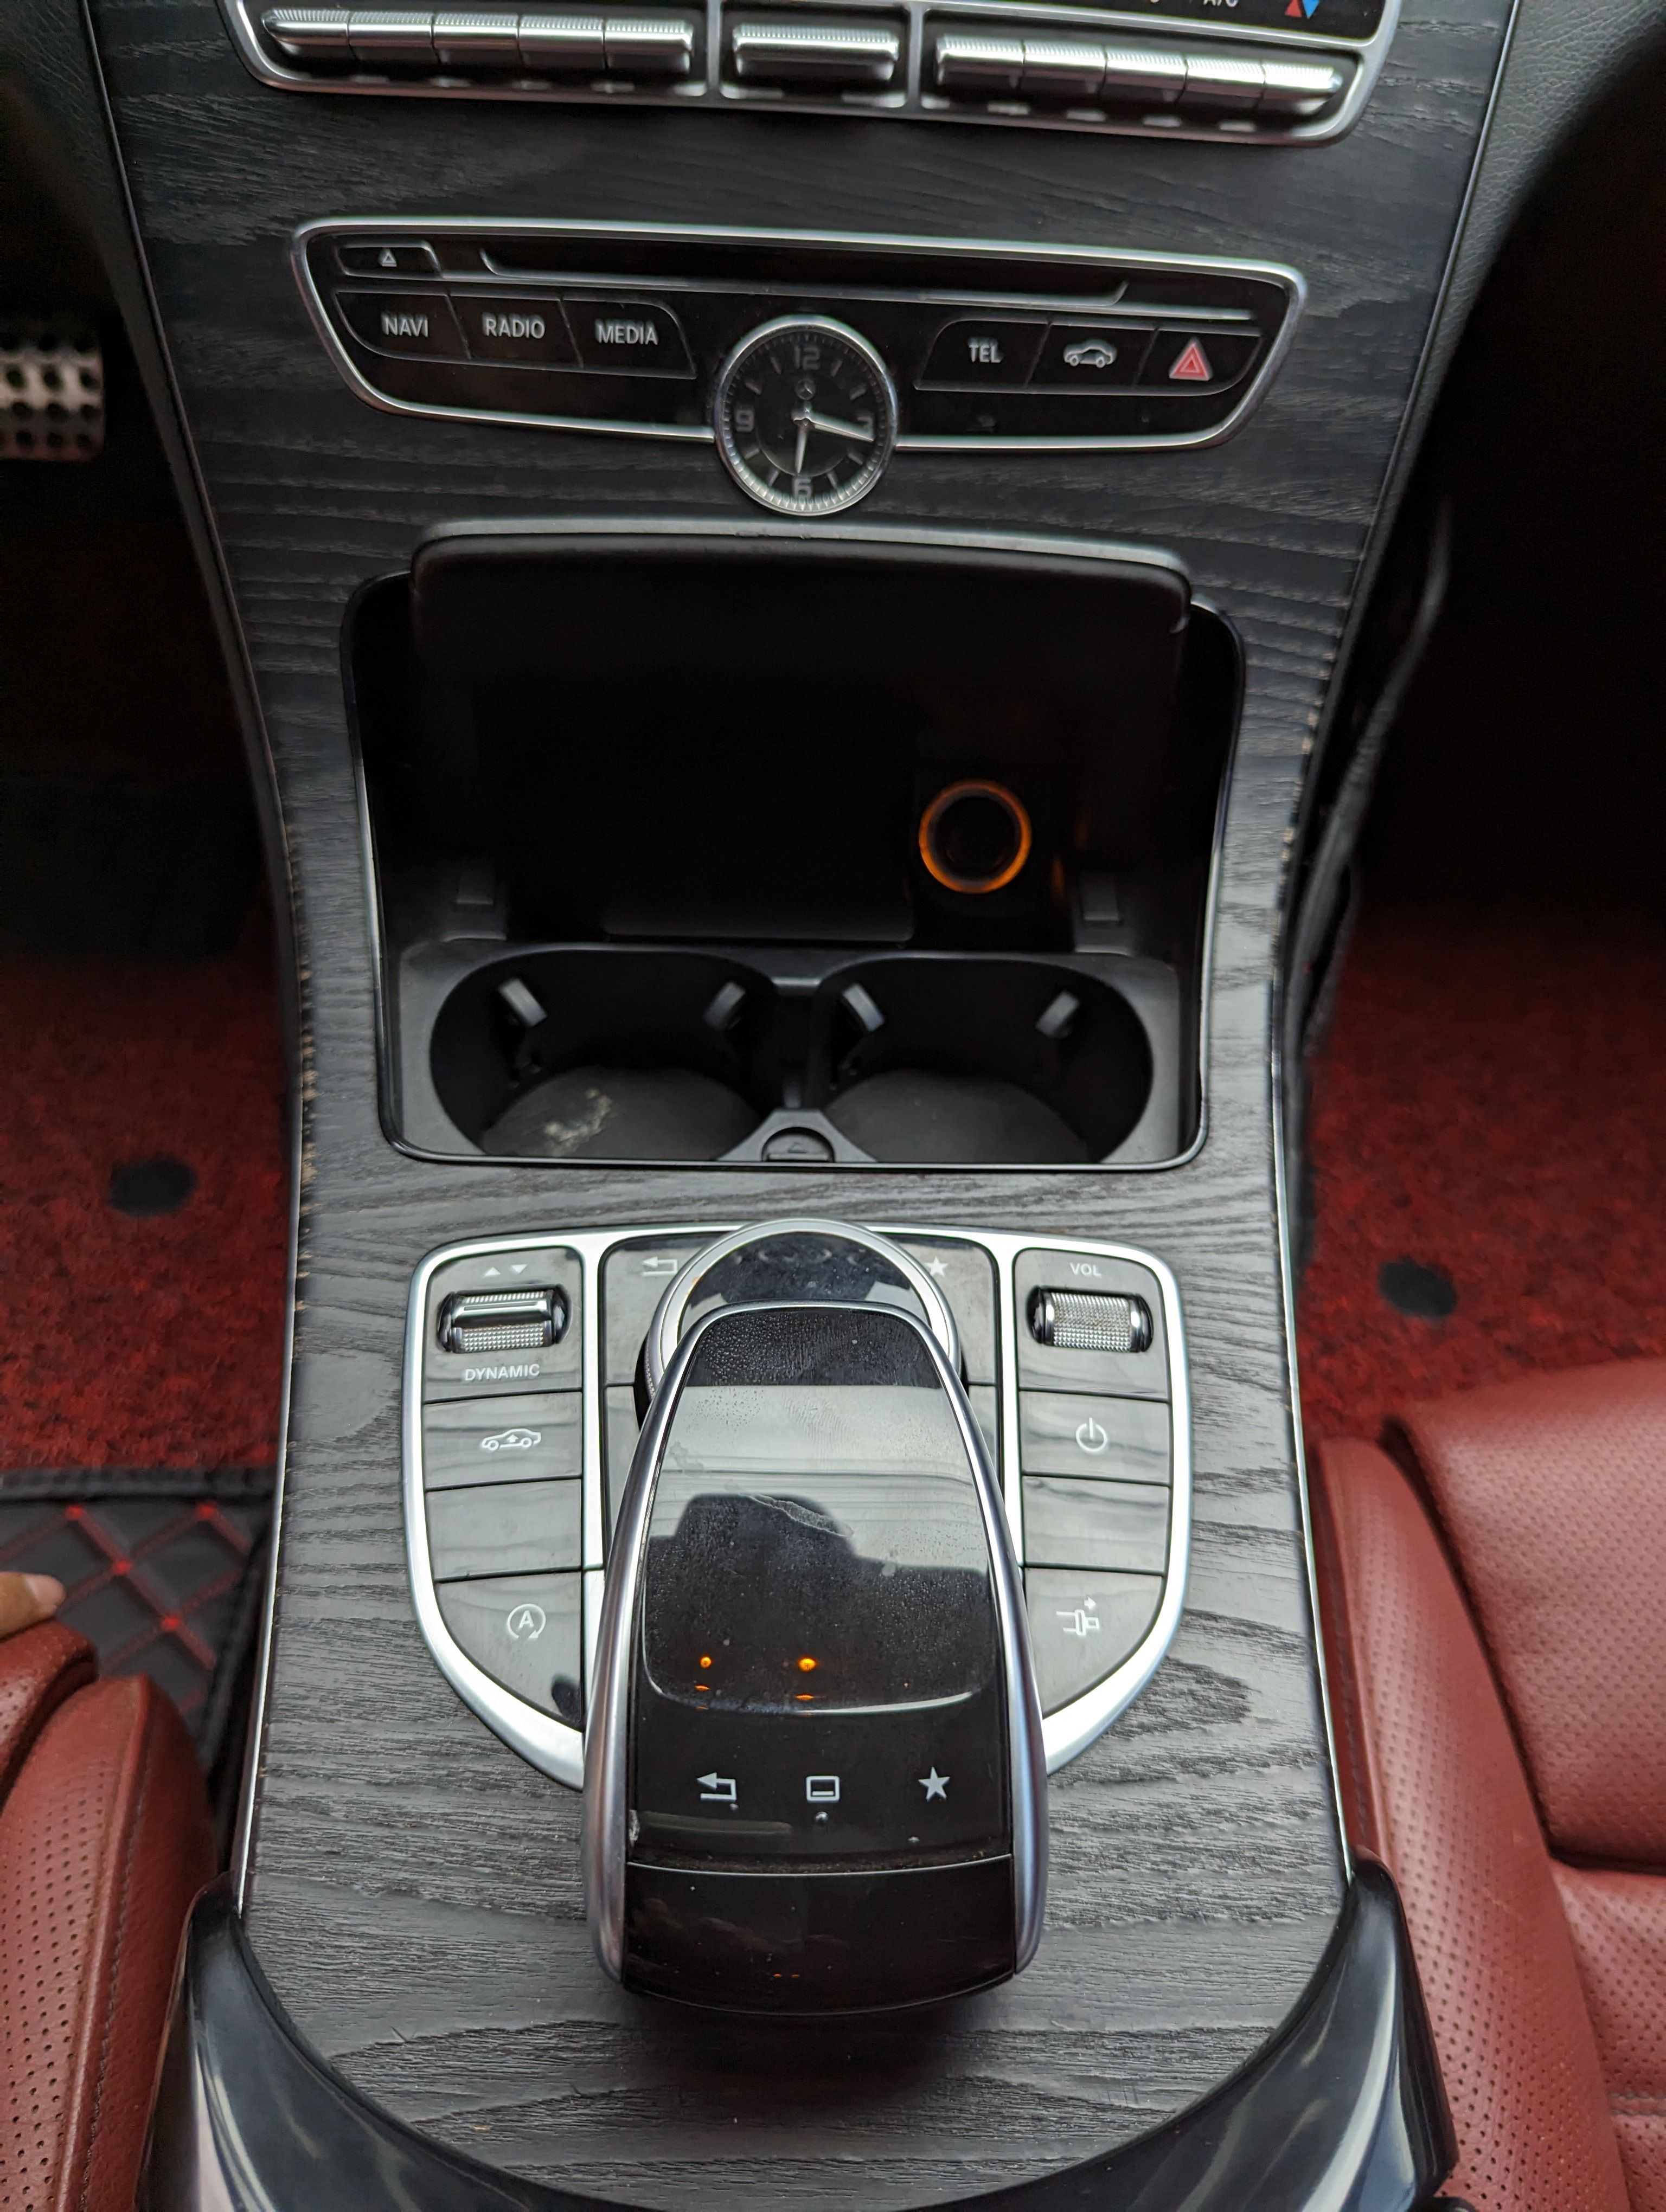 Mercedes-Benz C300 2017